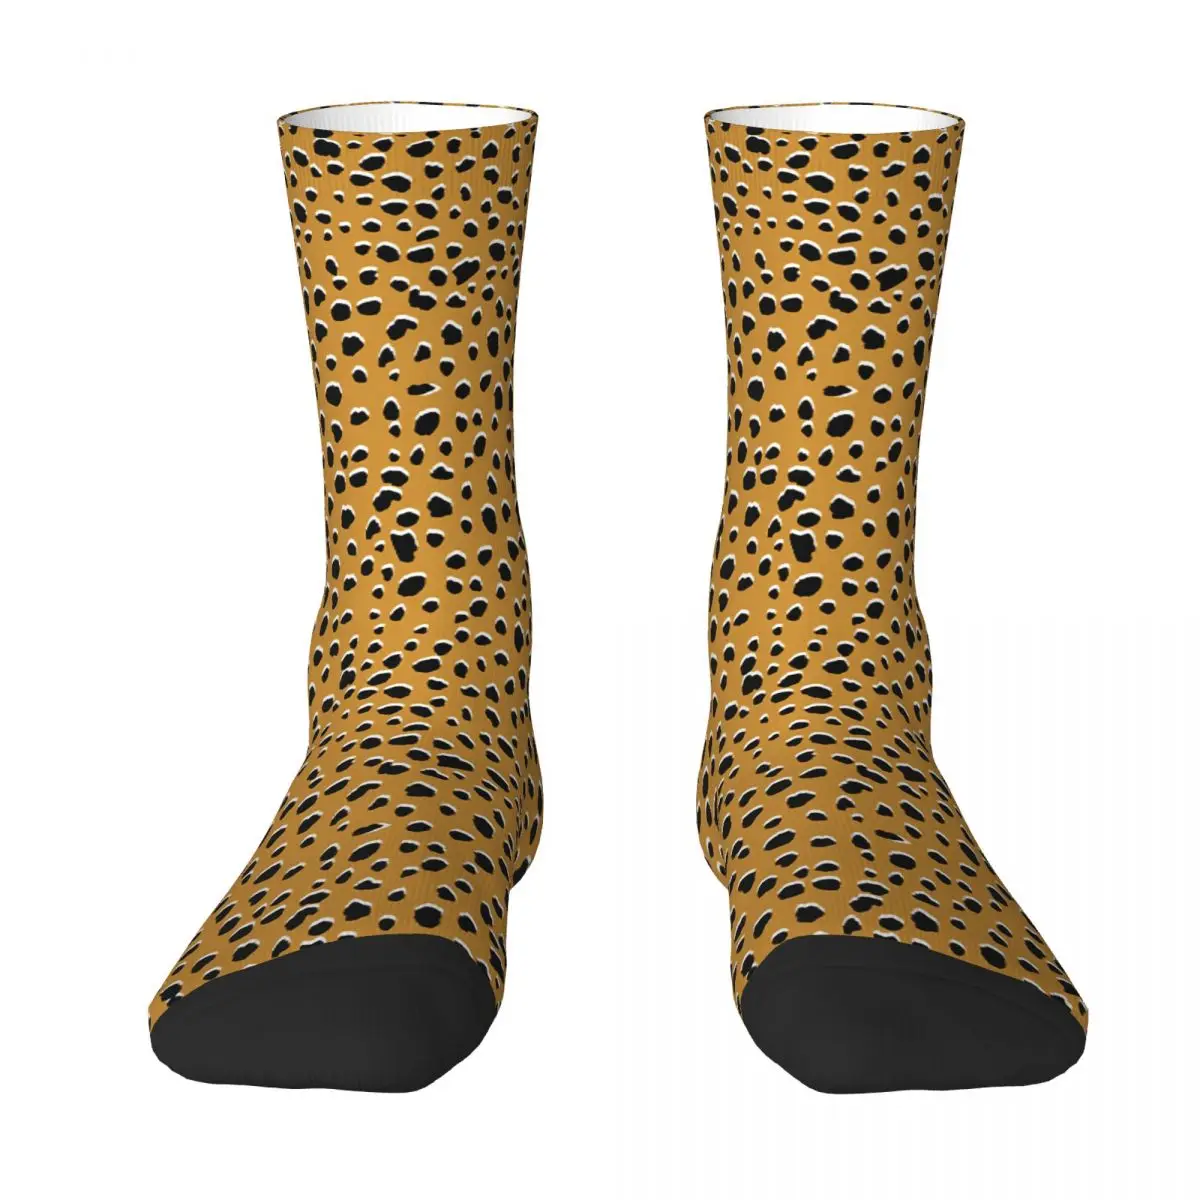 Бесшовные носки для взрослых с леопардовым принтом гепарда, носки унисекс, мужские носки, женские носки